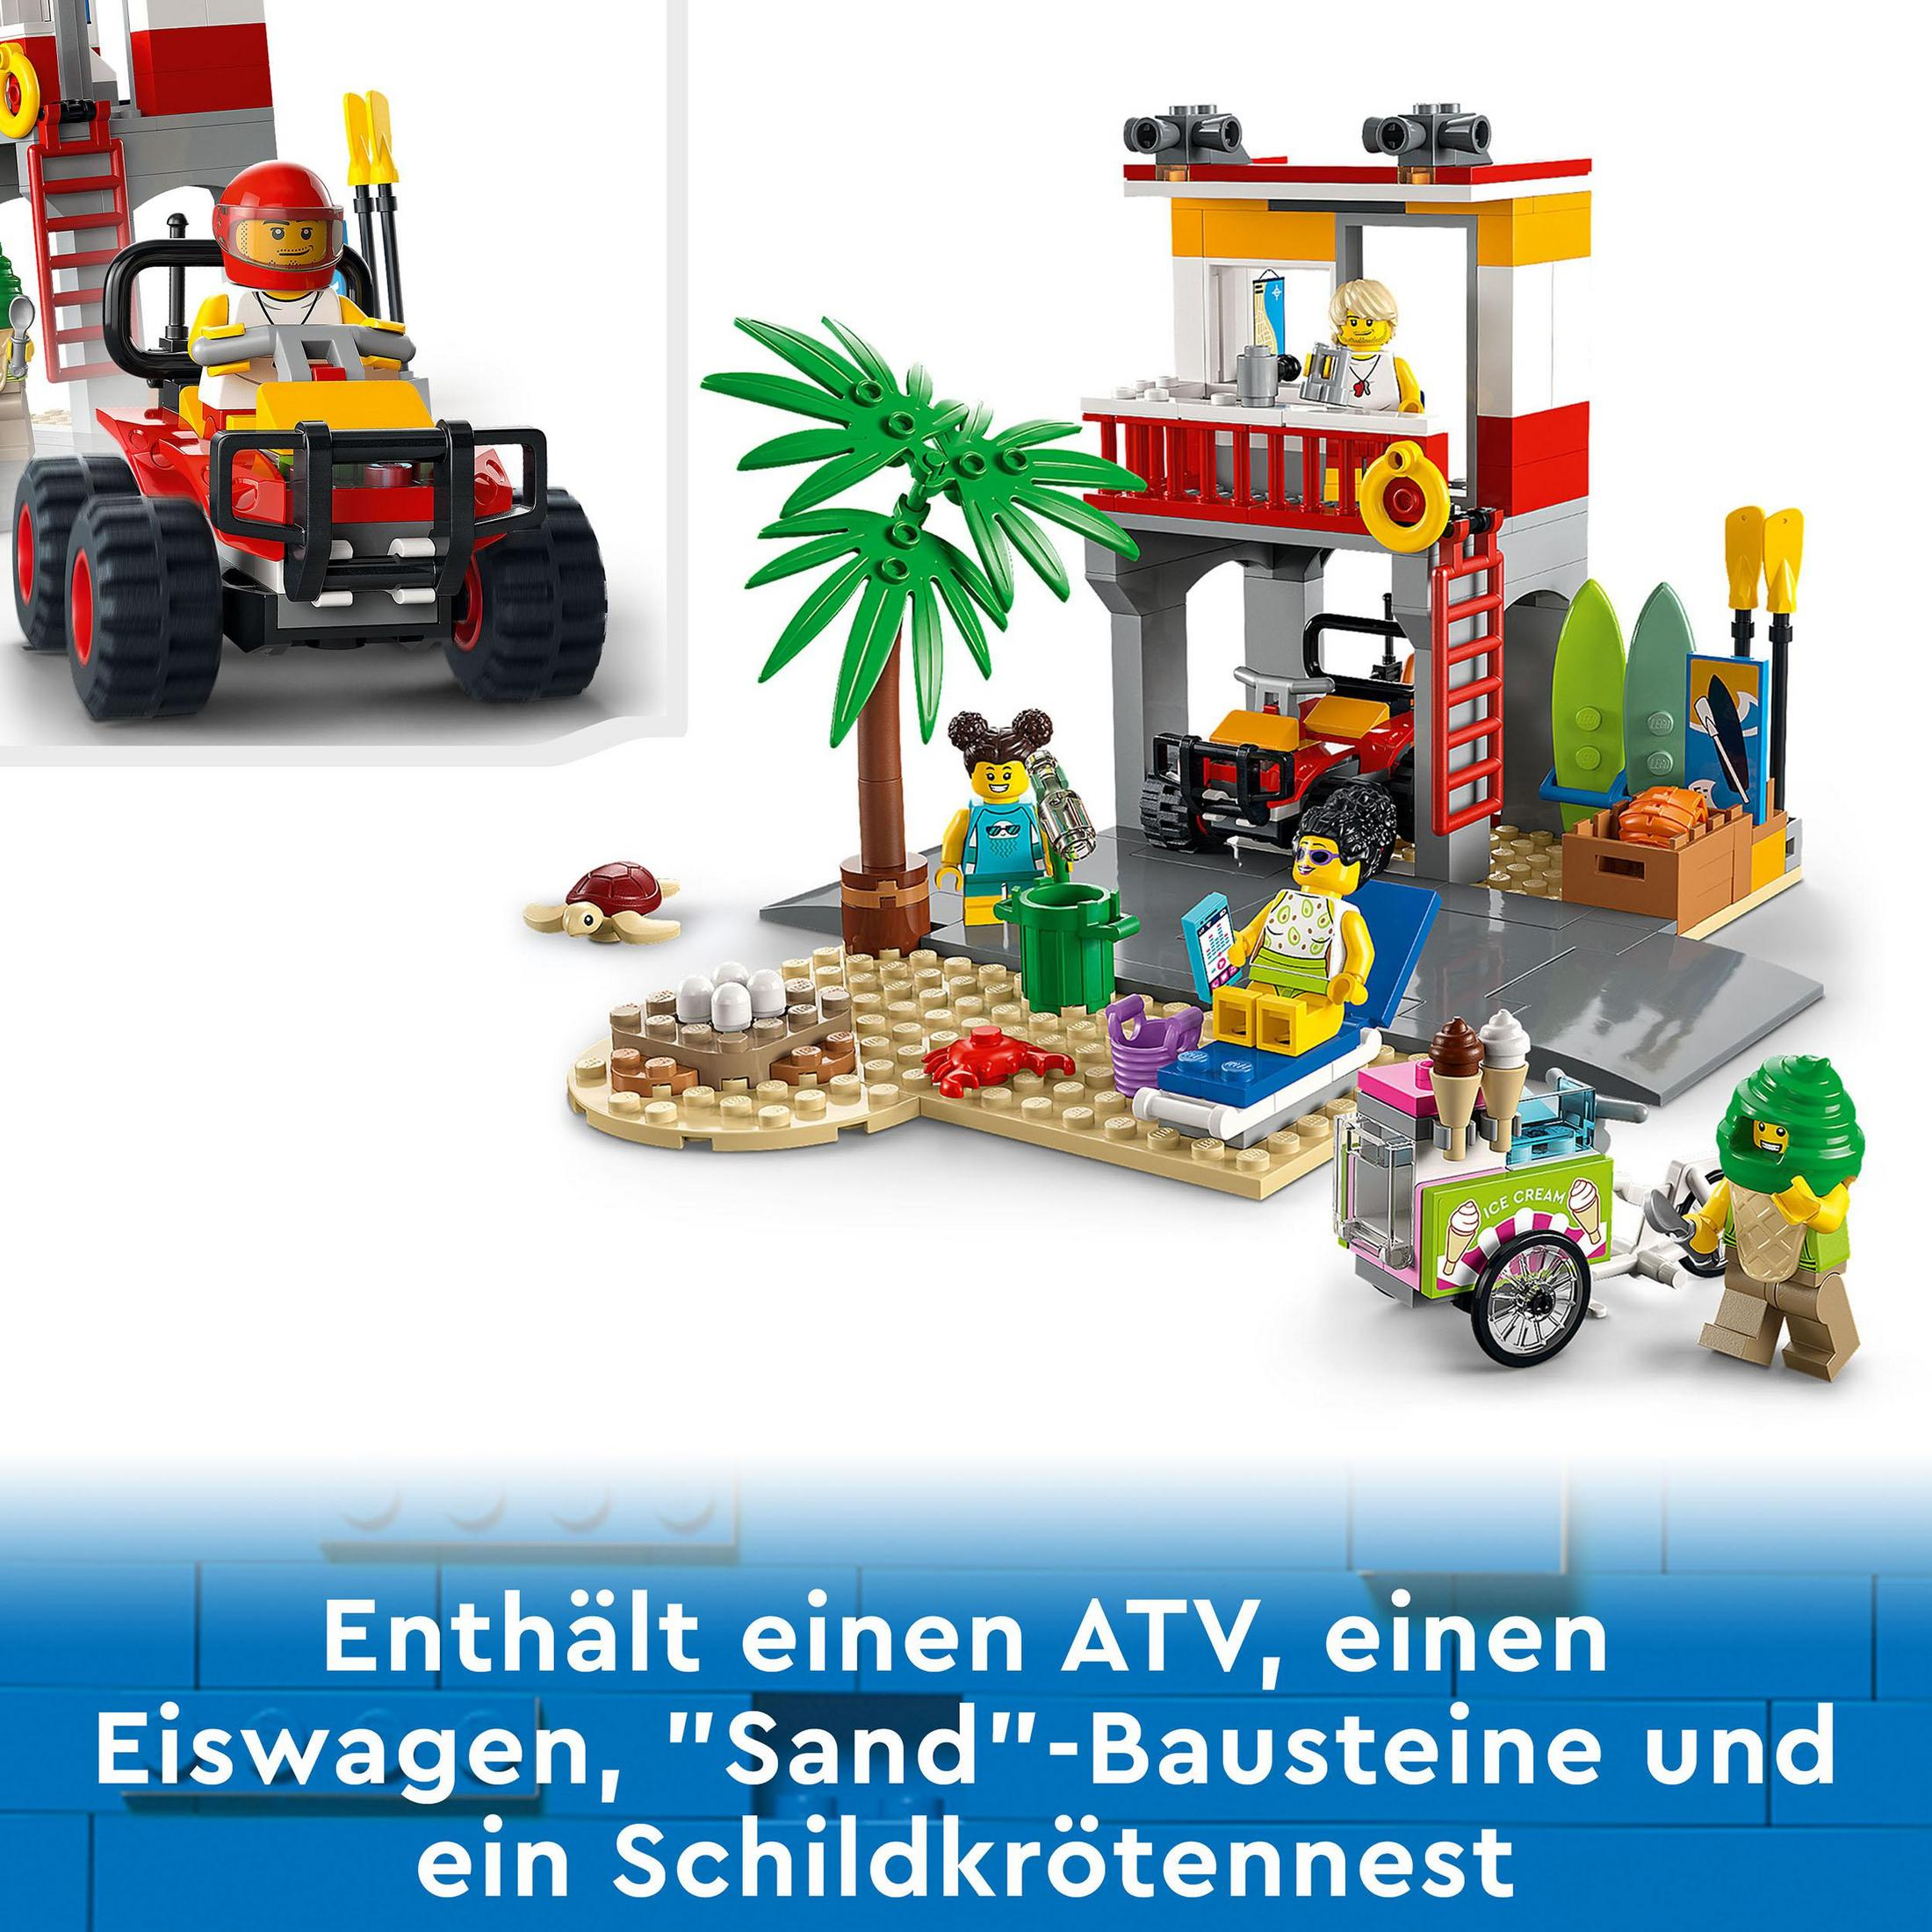 City LEGO Keine Angabe Rettungsschwimmer-Station Lego, 60328